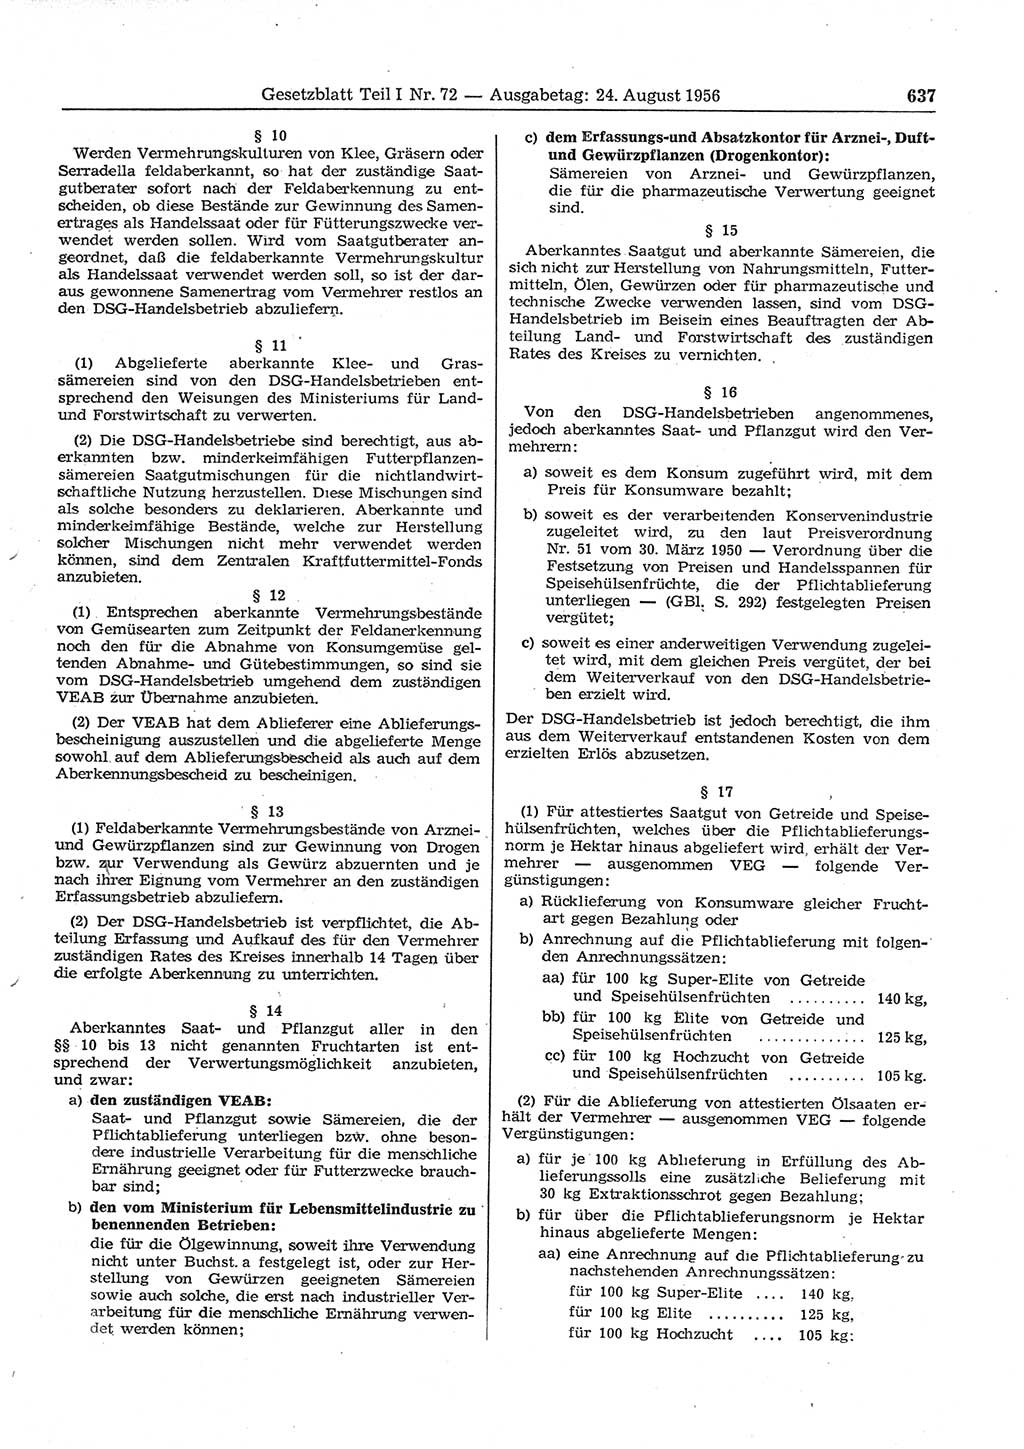 Gesetzblatt (GBl.) der Deutschen Demokratischen Republik (DDR) Teil Ⅰ 1956, Seite 637 (GBl. DDR Ⅰ 1956, S. 637)